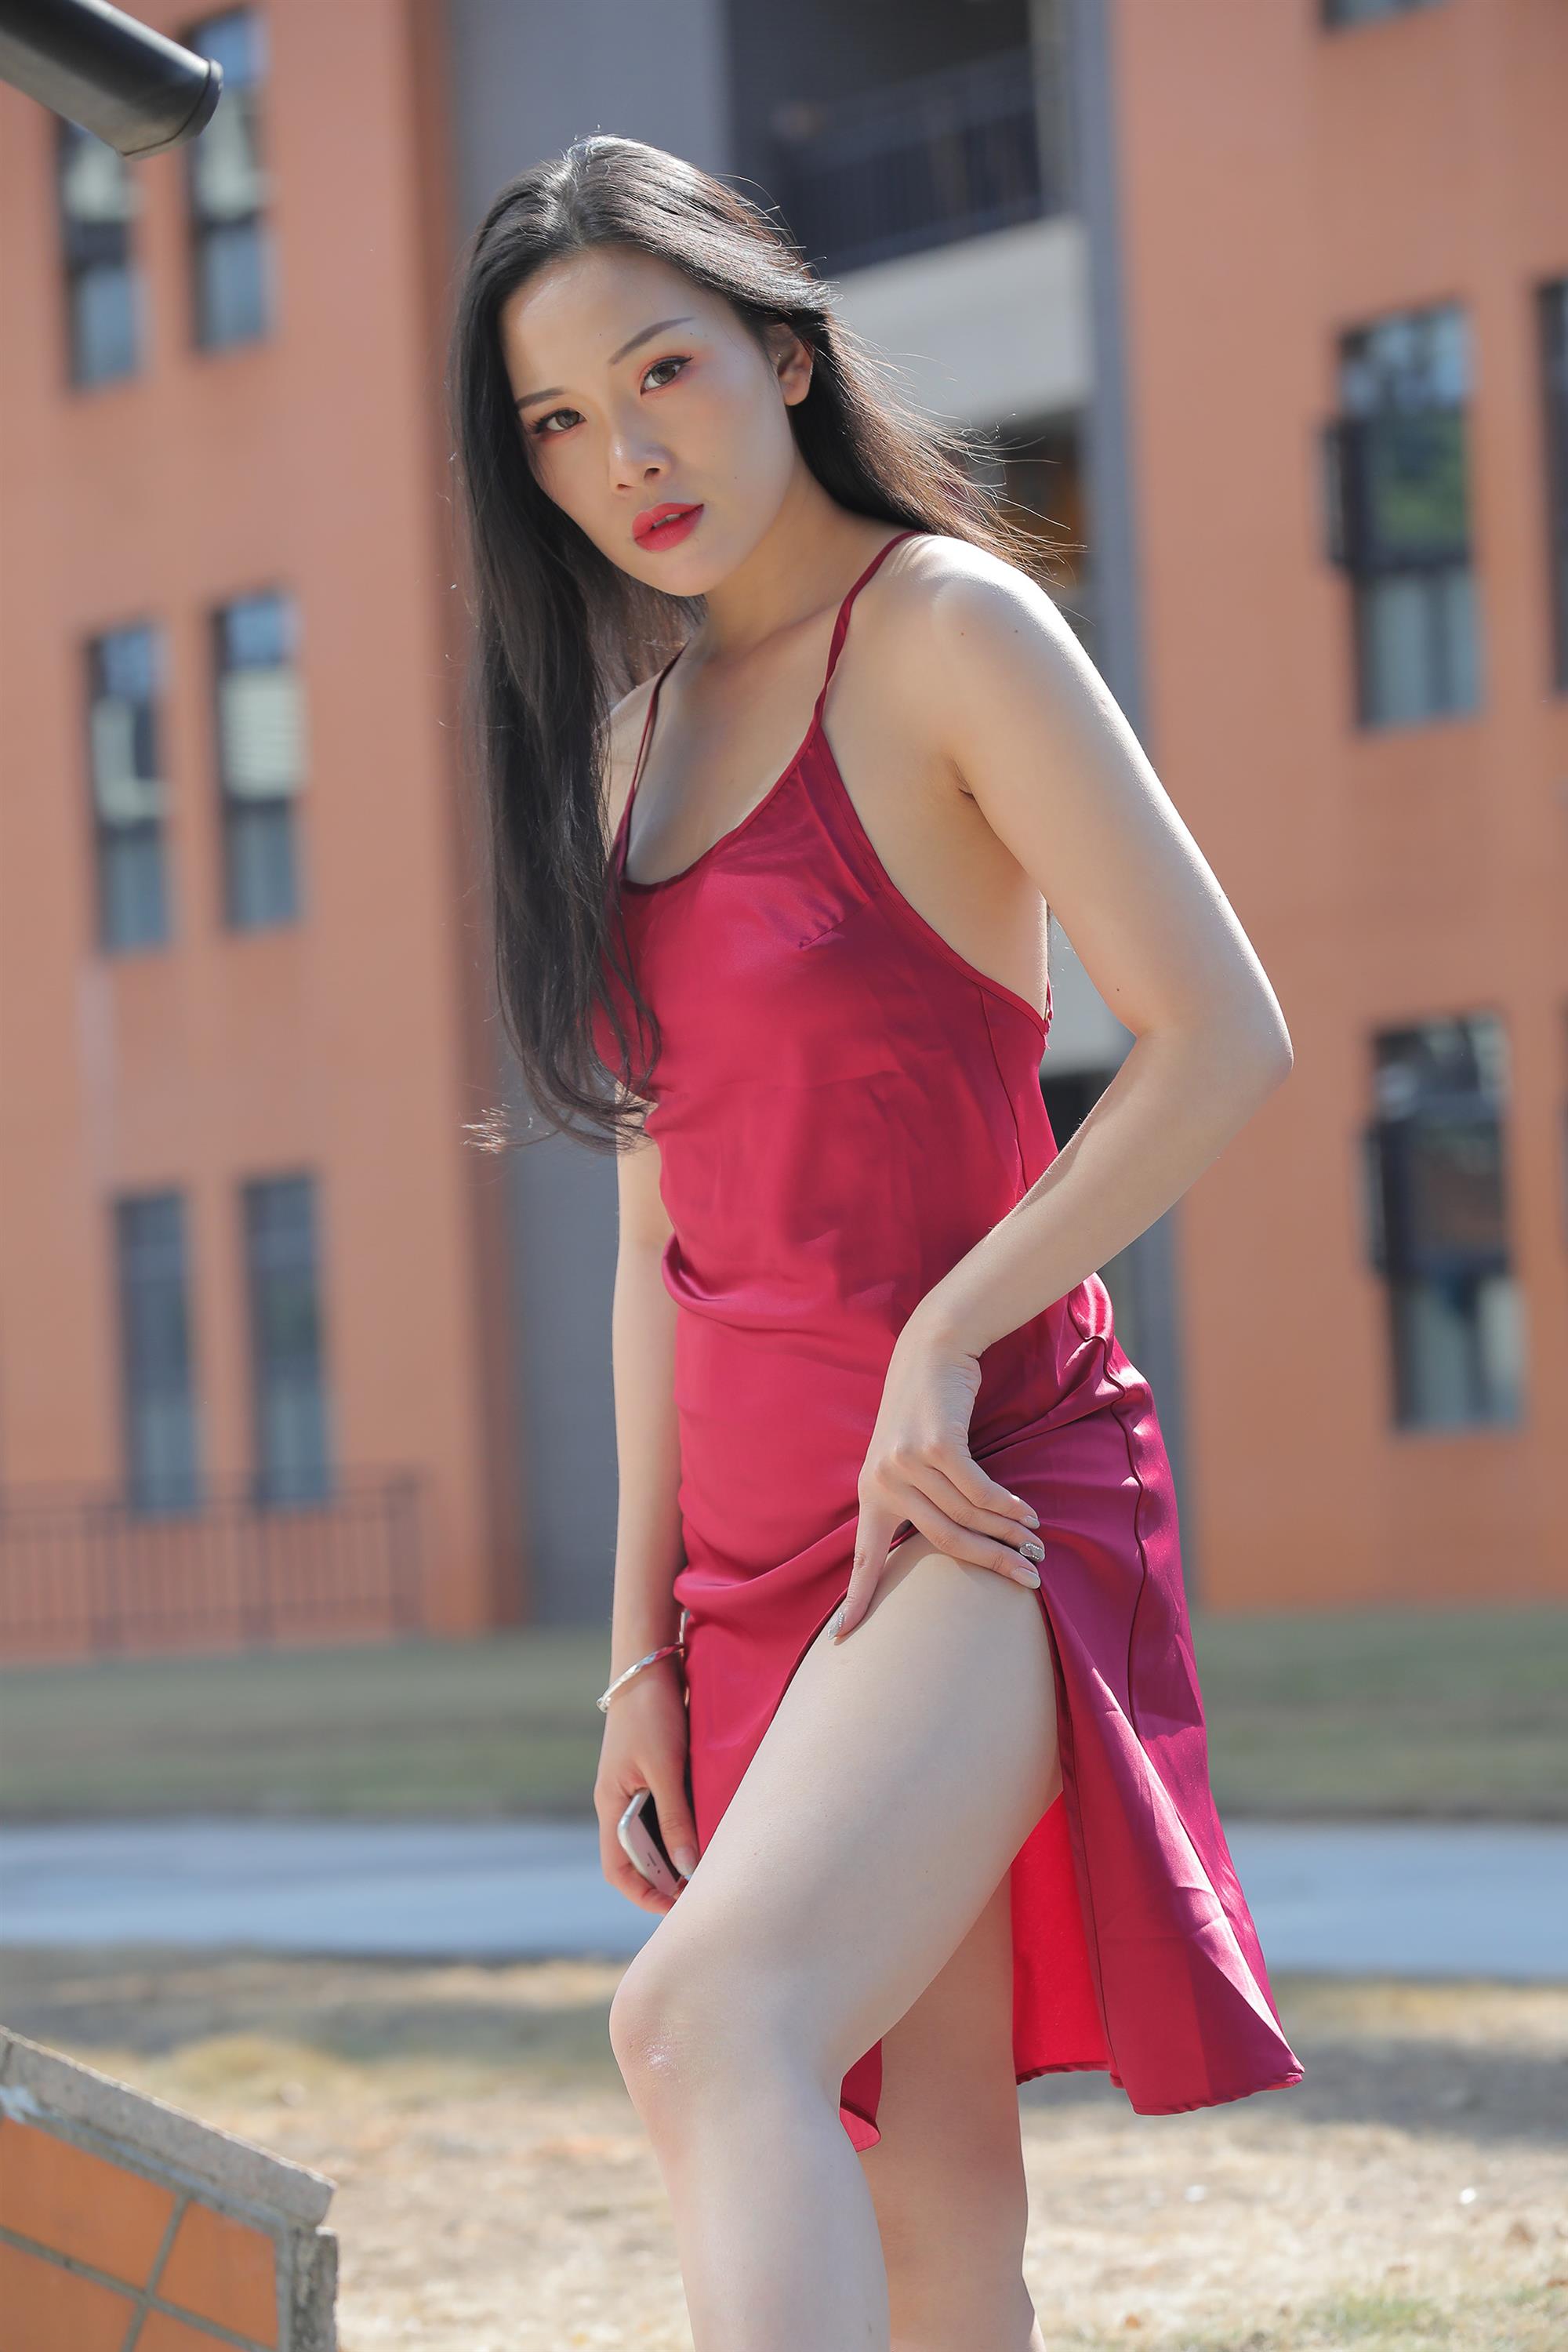 Street beauty in a red dress - 36.jpg